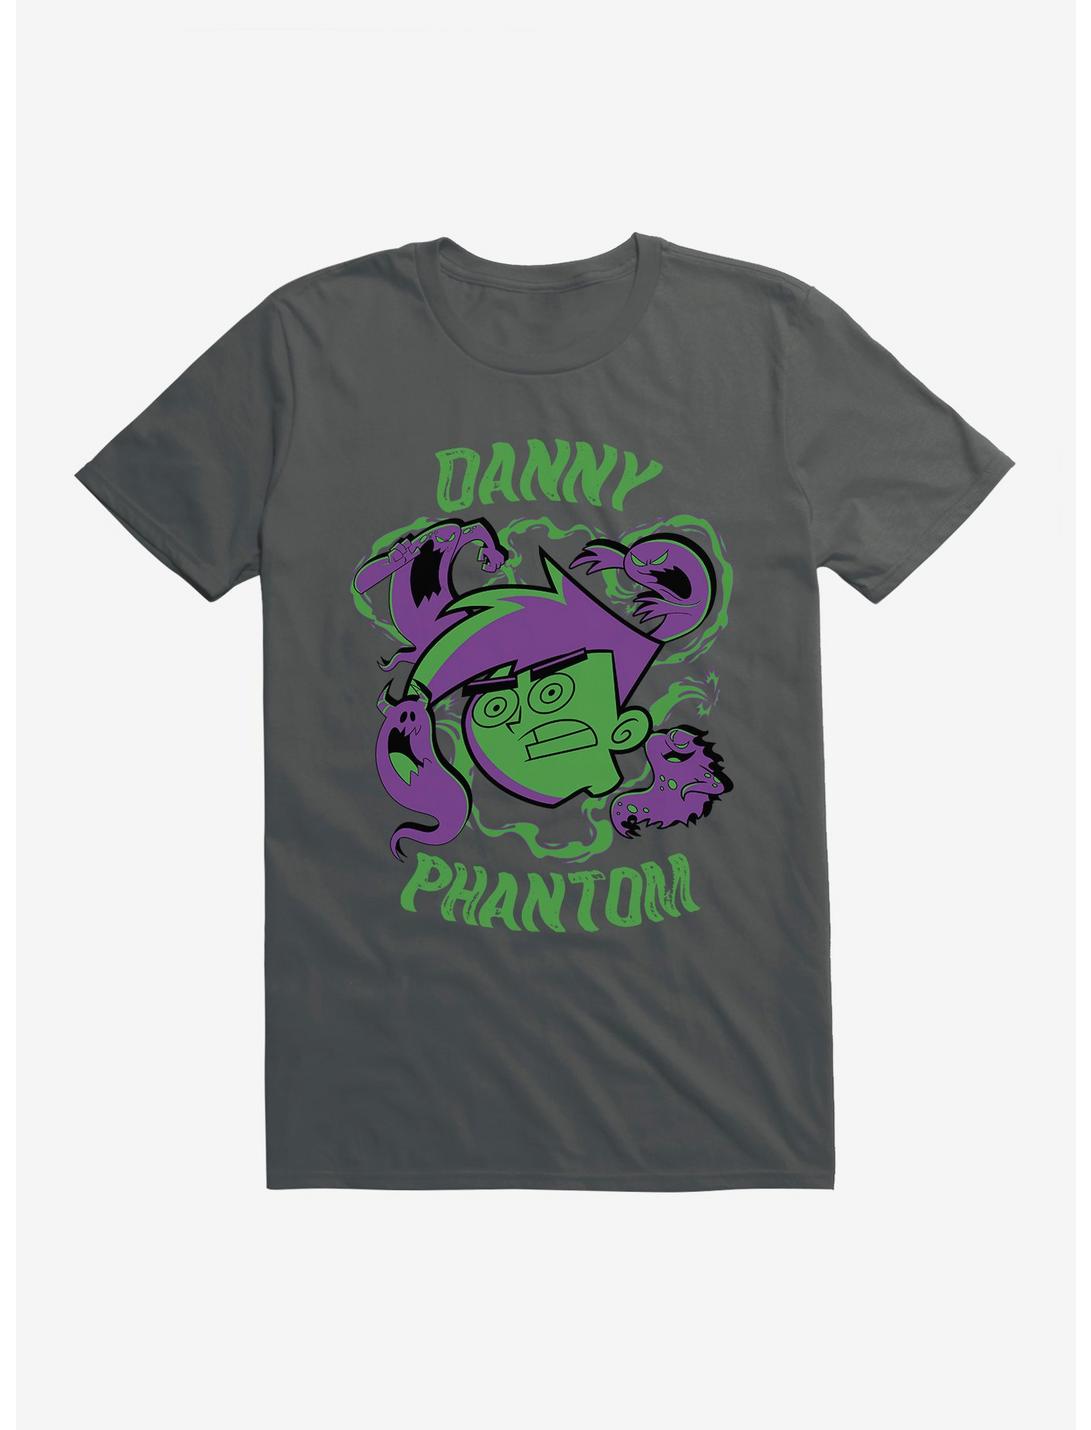 Danny Phantom Ghost Hunting T-Shirt, , hi-res